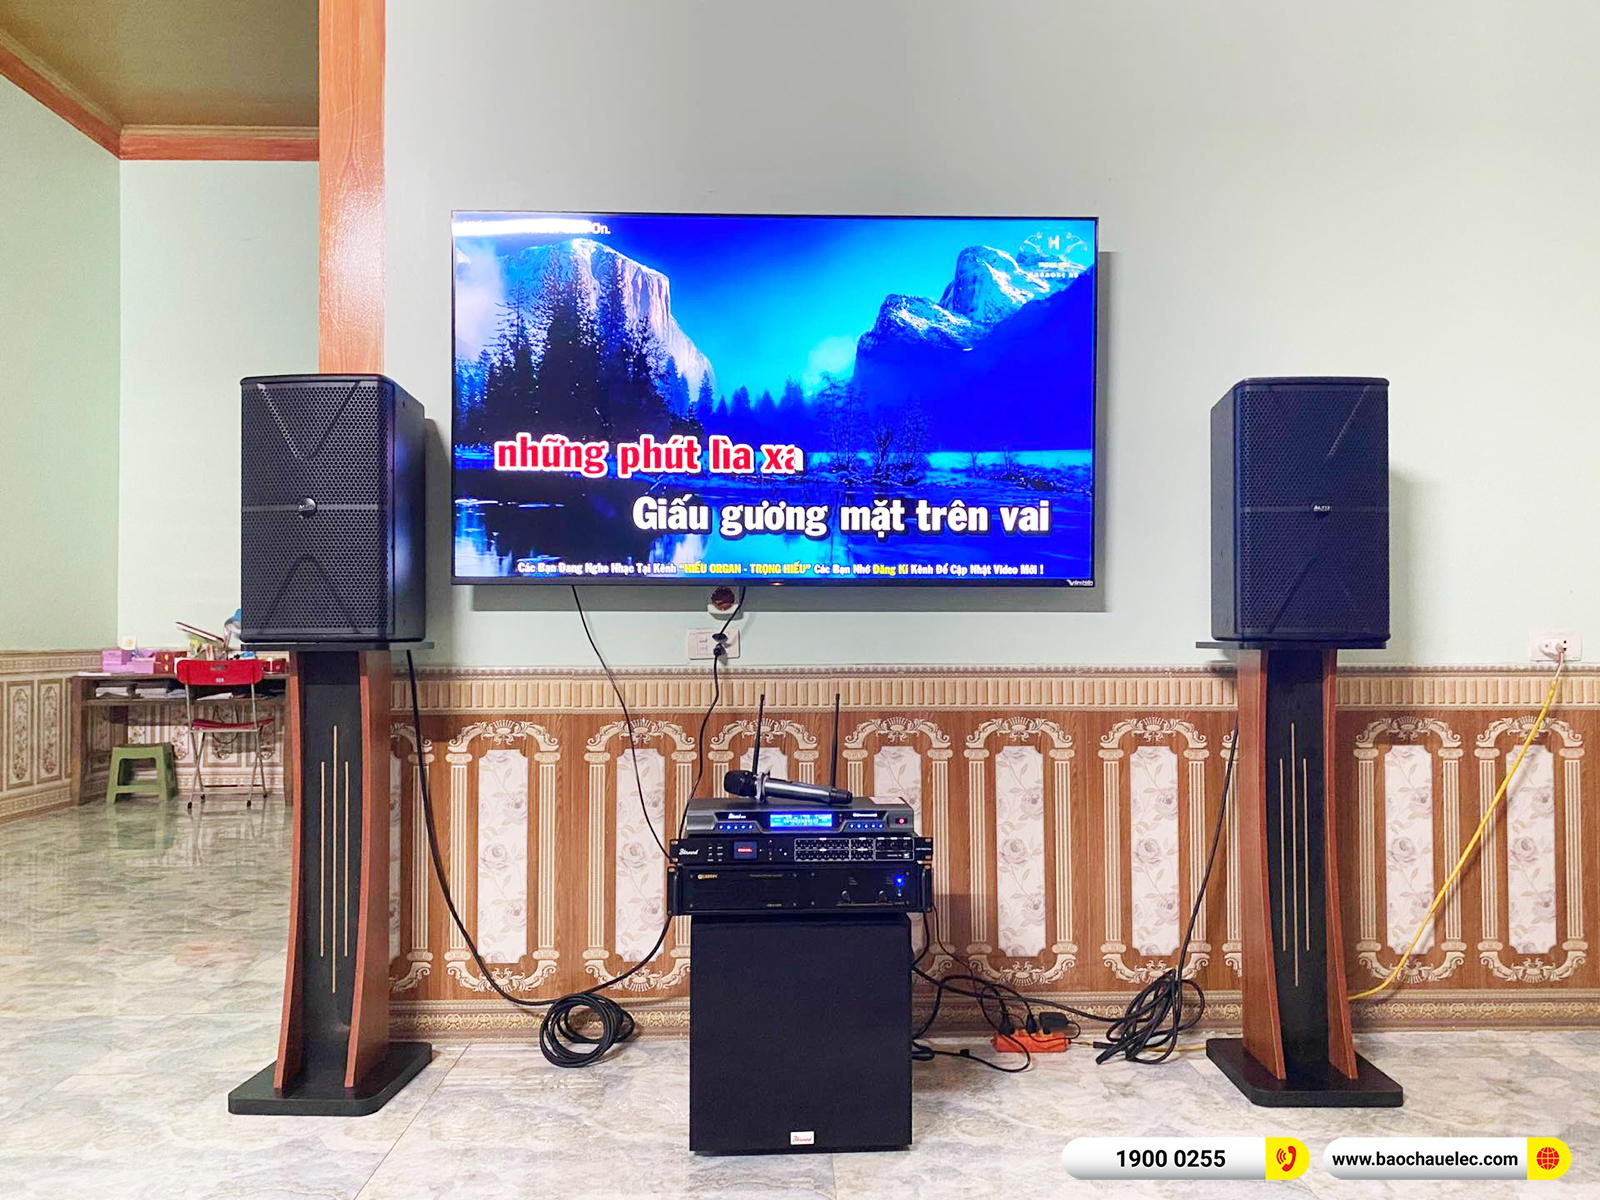 Lắp đặt dàn karaoke Alto hơn 25tr cho anh Tần tại Bắc Giang